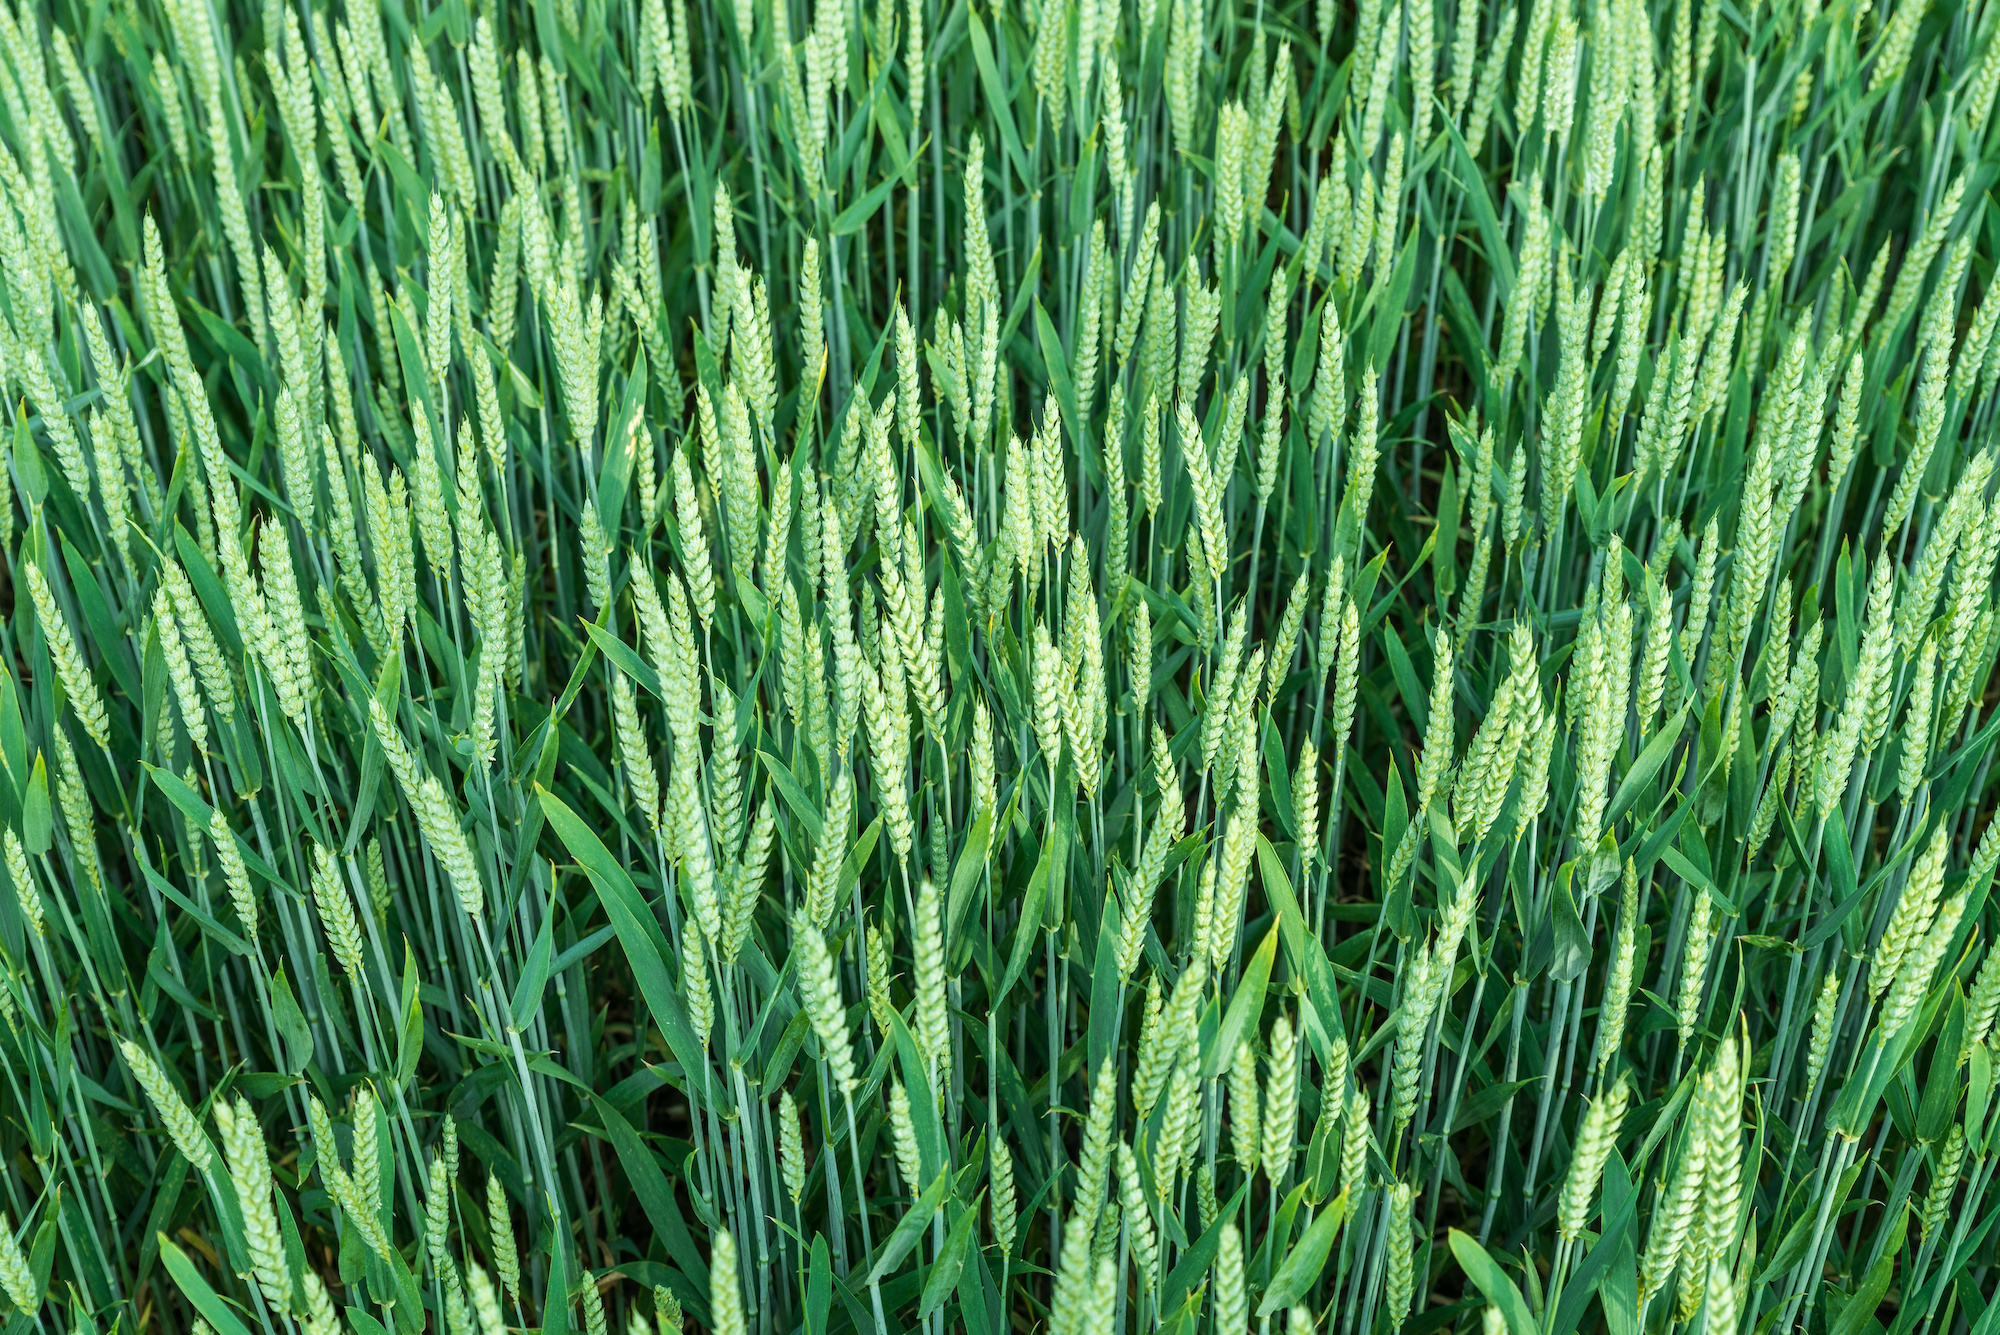 La complexité génétique du blé a empêché jusqu’à présent la création de variétés résistantes. (Photo: Adobe Stock)